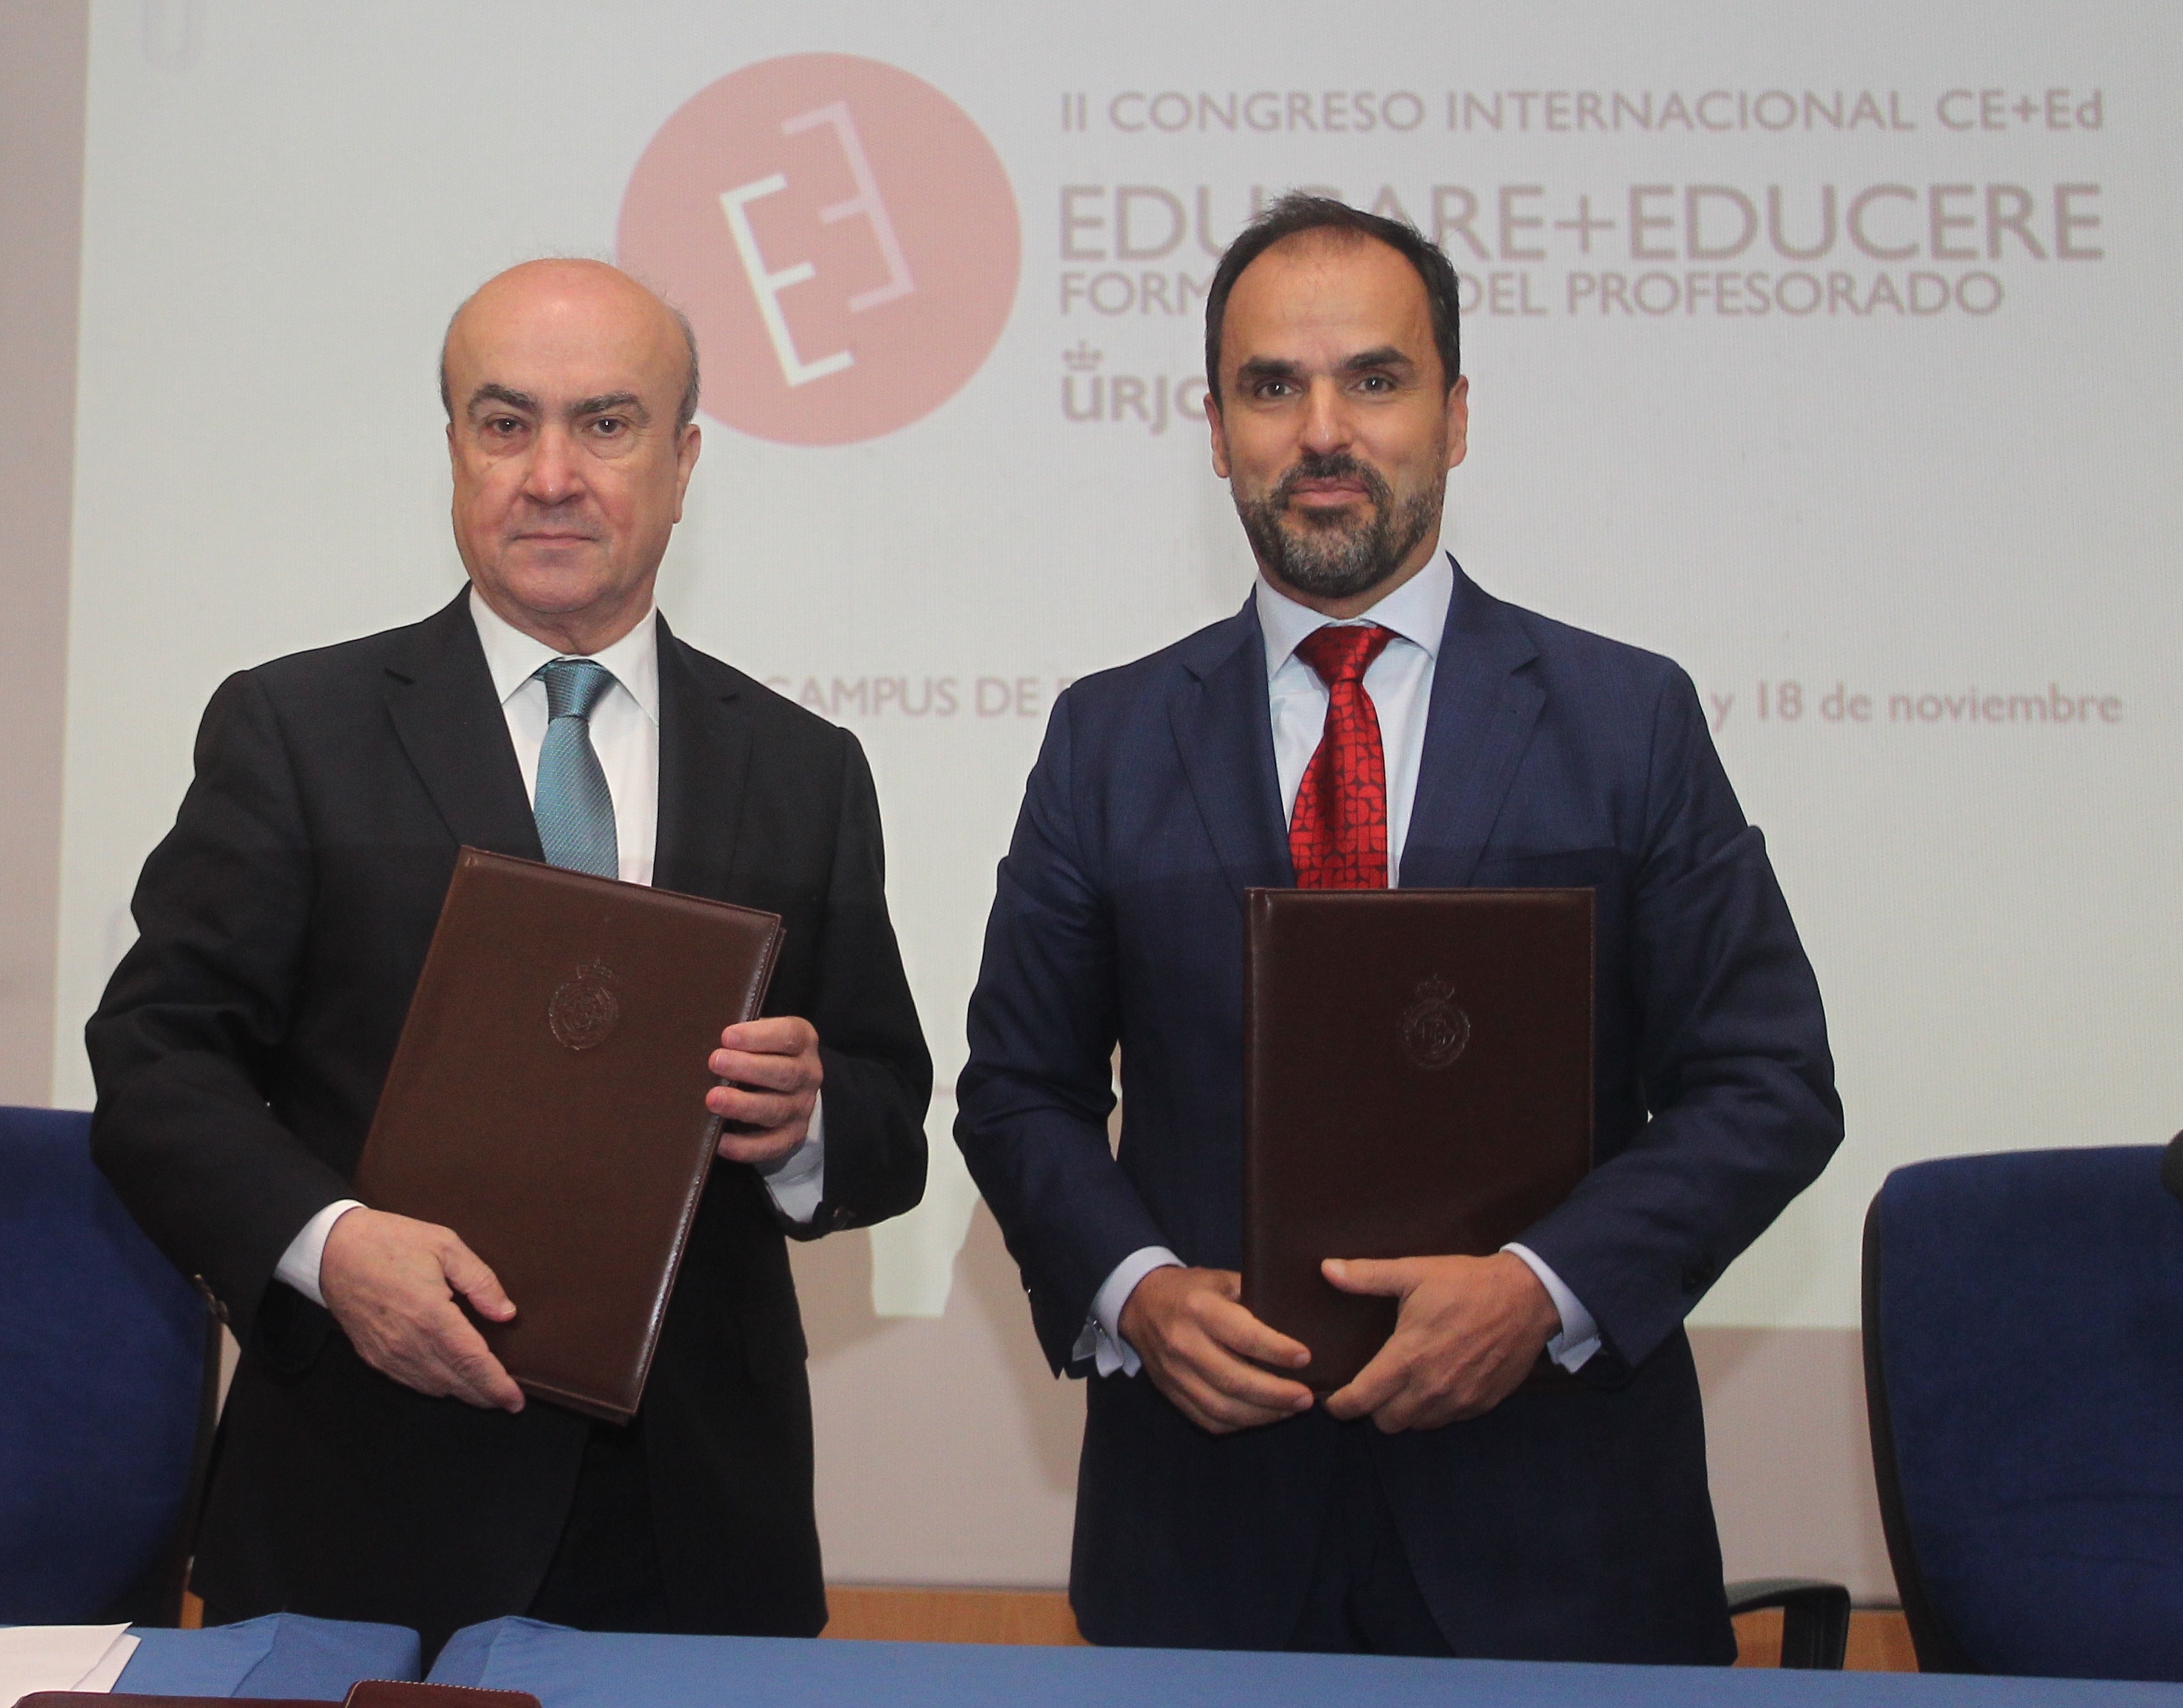 La OEI y la Universidad Rey Juan Carlos acuerdan estrechar lazos de cooperación